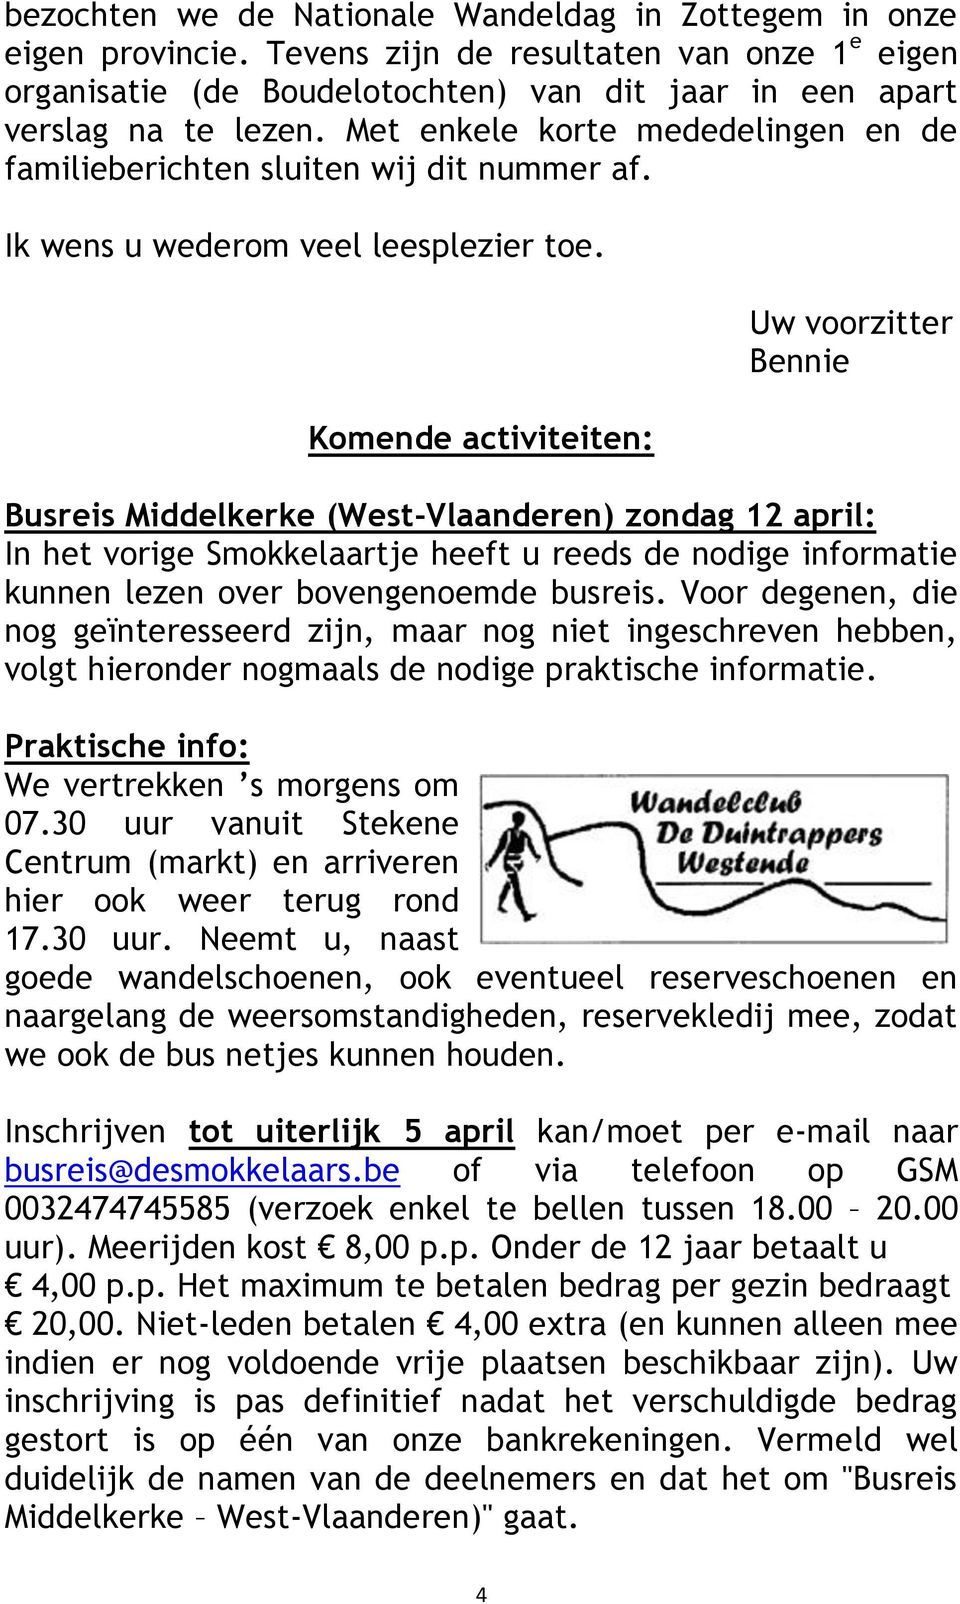 Komende activiteiten: Uw voorzitter Bennie Busreis Middelkerke (West-Vlaanderen) zondag 12 april: In het vorige Smokkelaartje heeft u reeds de nodige informatie kunnen lezen over bovengenoemde